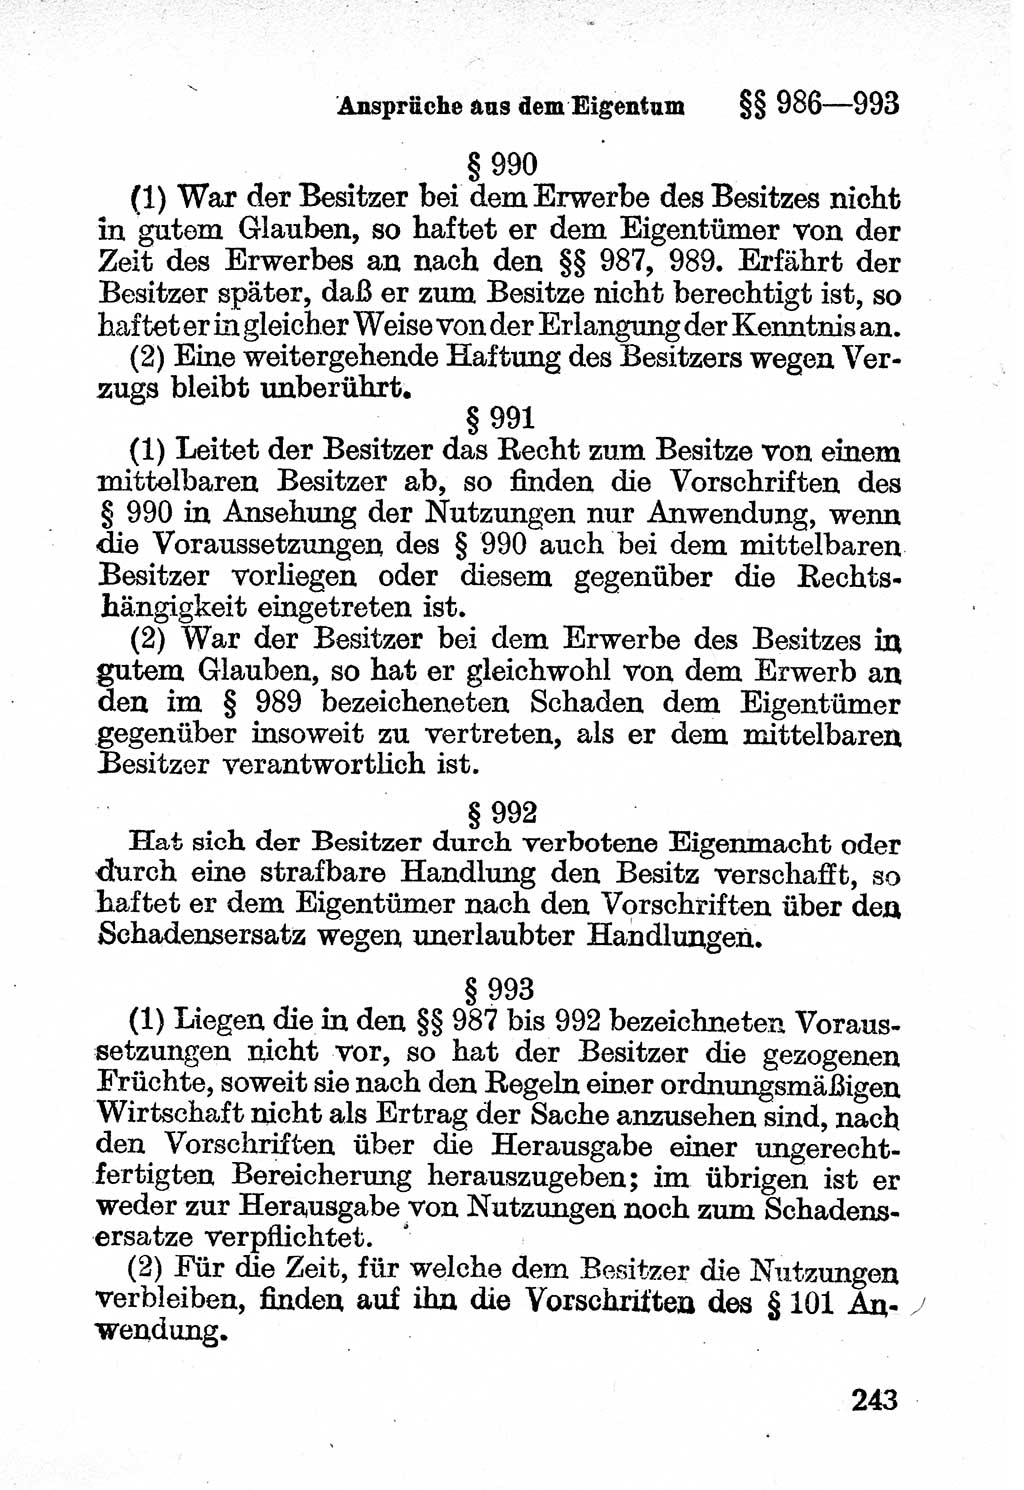 Bürgerliches Gesetzbuch (BGB) nebst wichtigen Nebengesetzen [Deutsche Demokratische Republik (DDR)] 1956, Seite 243 (BGB Nebenges. DDR 1956, S. 243)